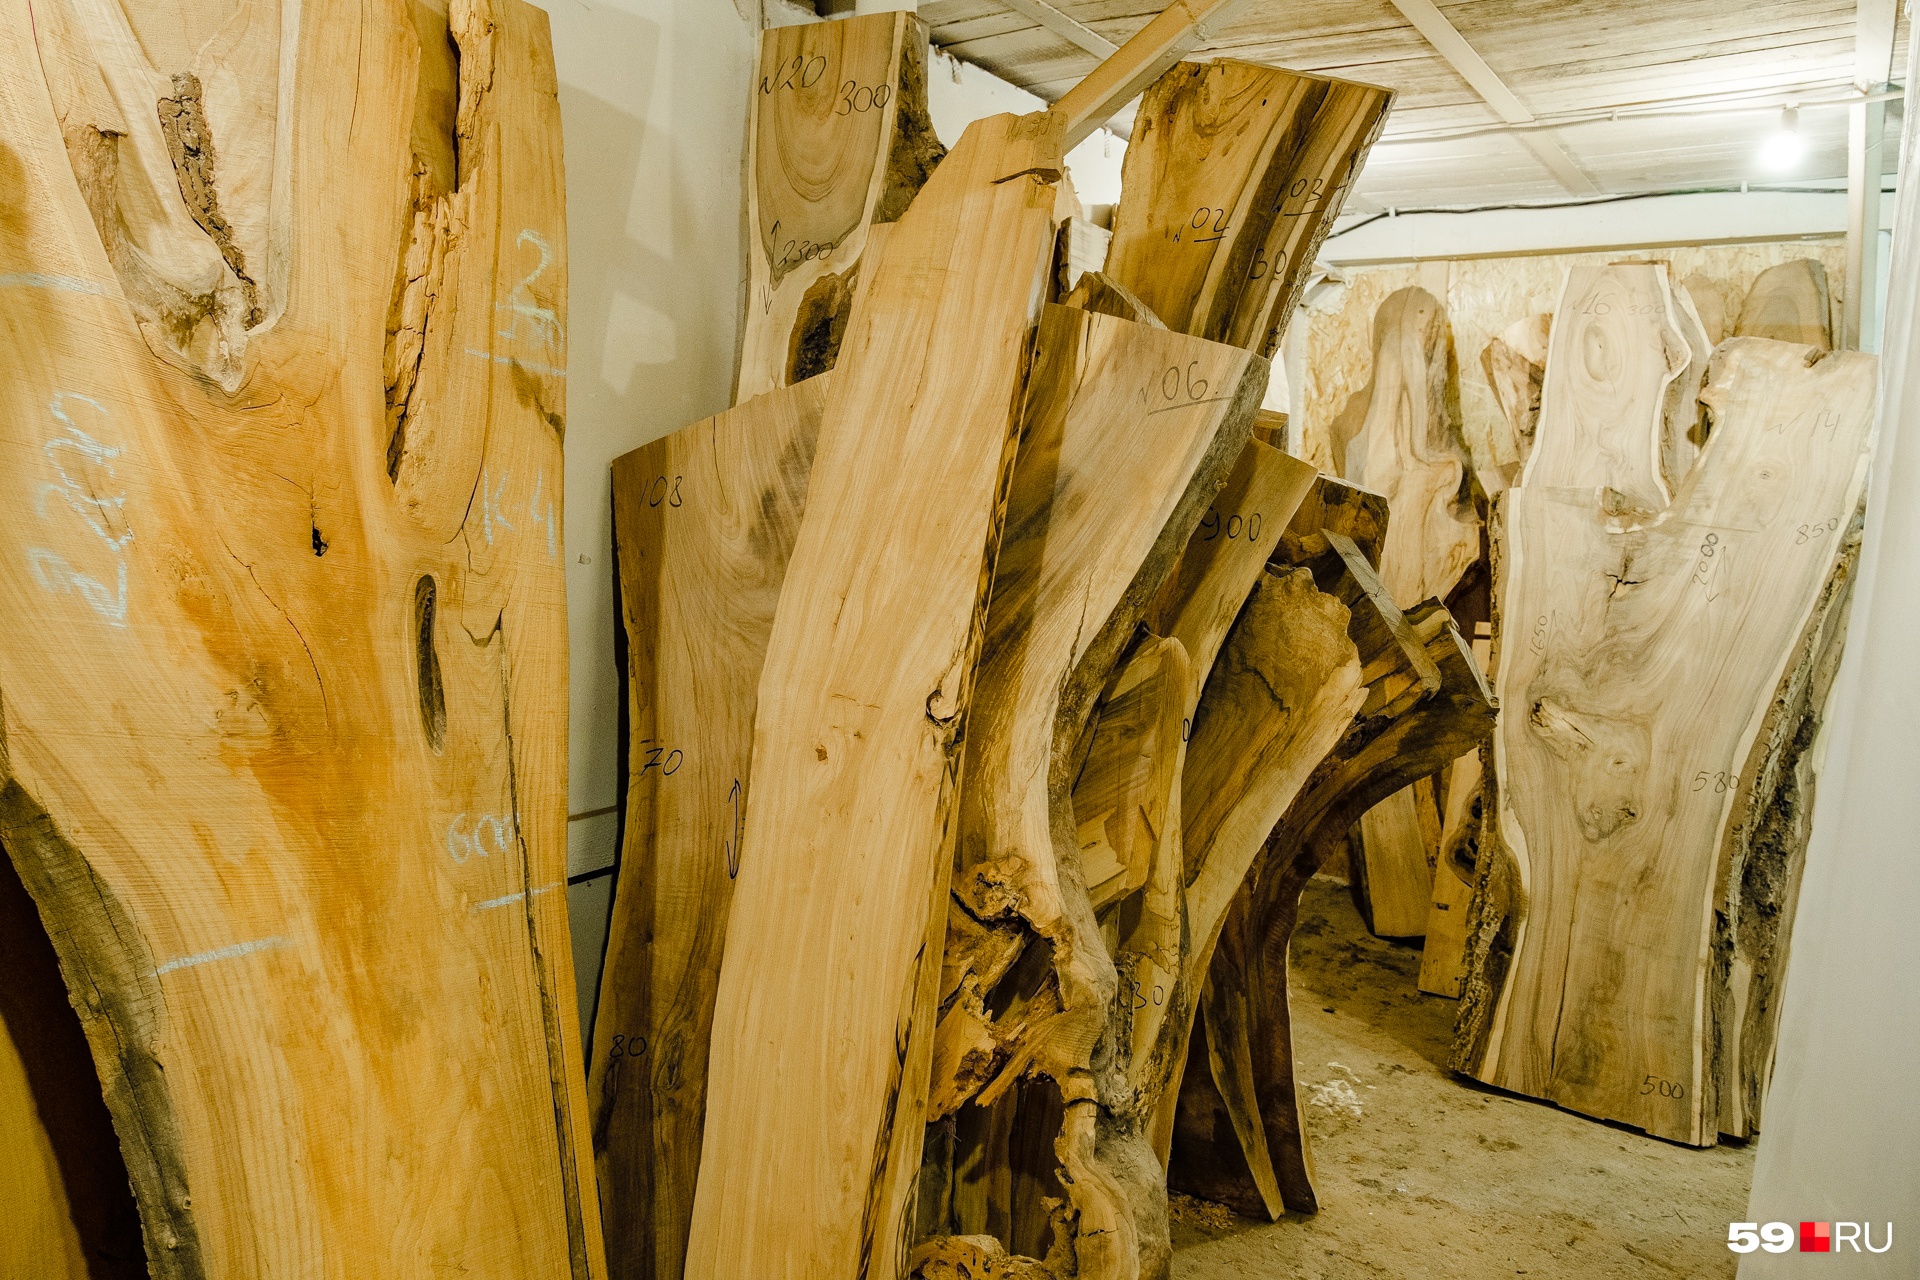 Мебель в мастерской создают из таких слэбов — деревянных досок. А можно купить слэб и самому попытаться что-то из него сделать